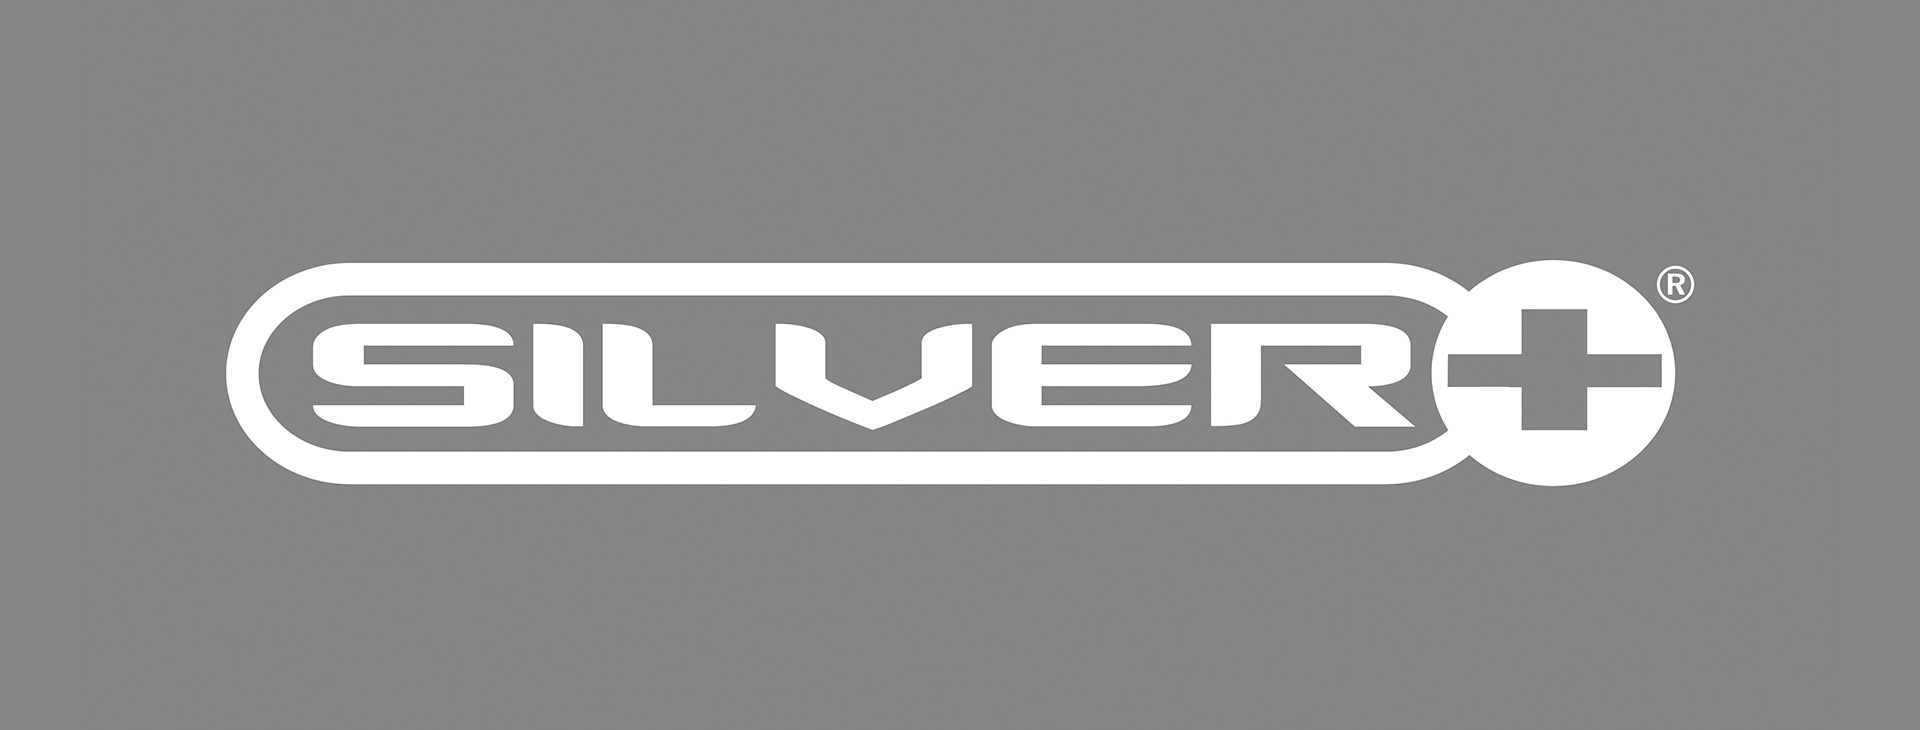 silver-plus_lente_NO_20201102